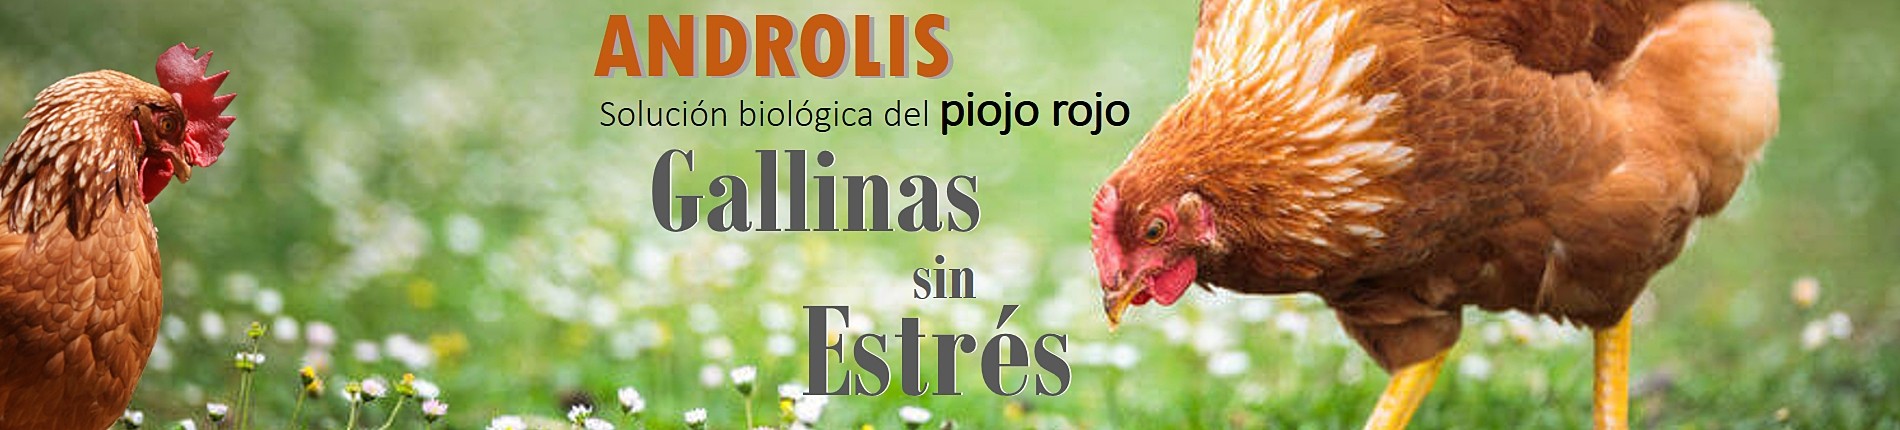 ANDROLIS, la solución biológica del piojo rojo de las aves